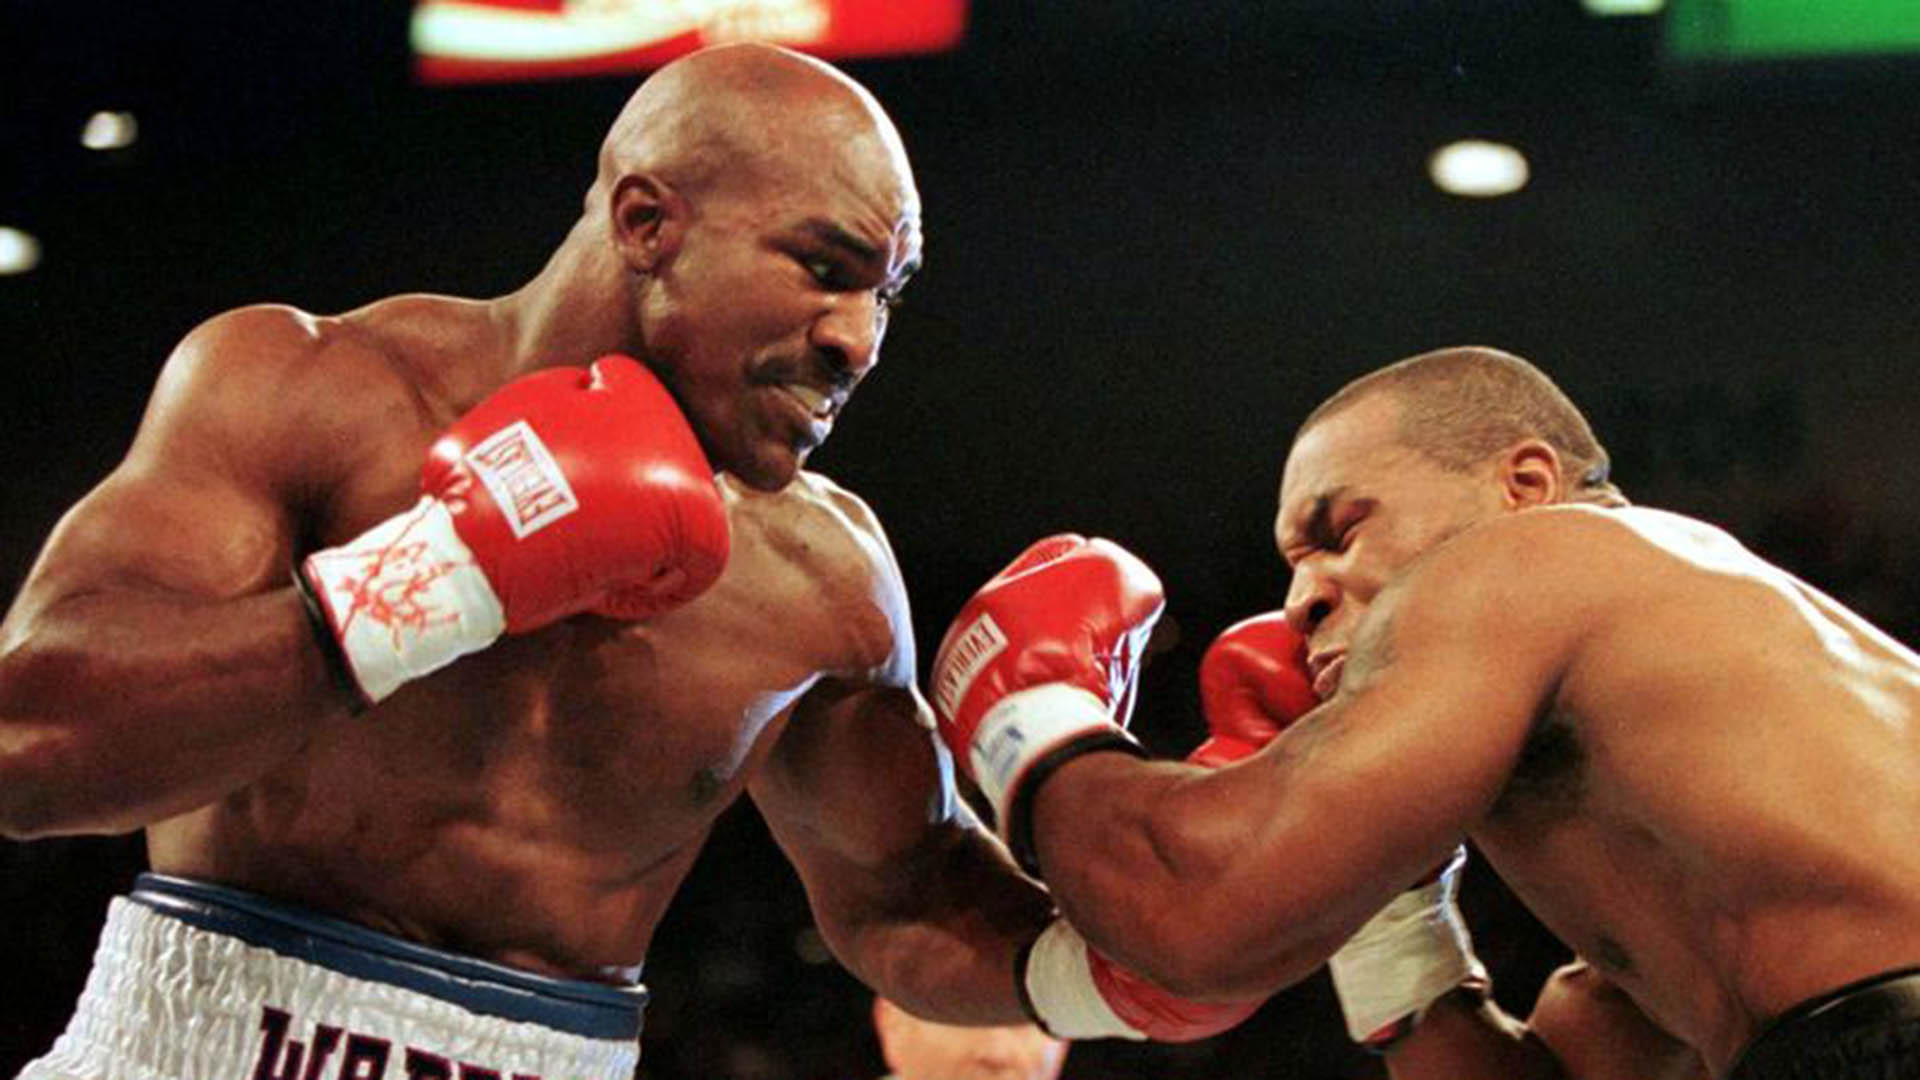 IMAGEN DE ARCHIVO. El campeón de peso completo de la AMB Evander Holyfield (R) conecta en la mandíbula al retador Mike Tyson en el primer asalto de su pelea del 28 de junio de 1997.